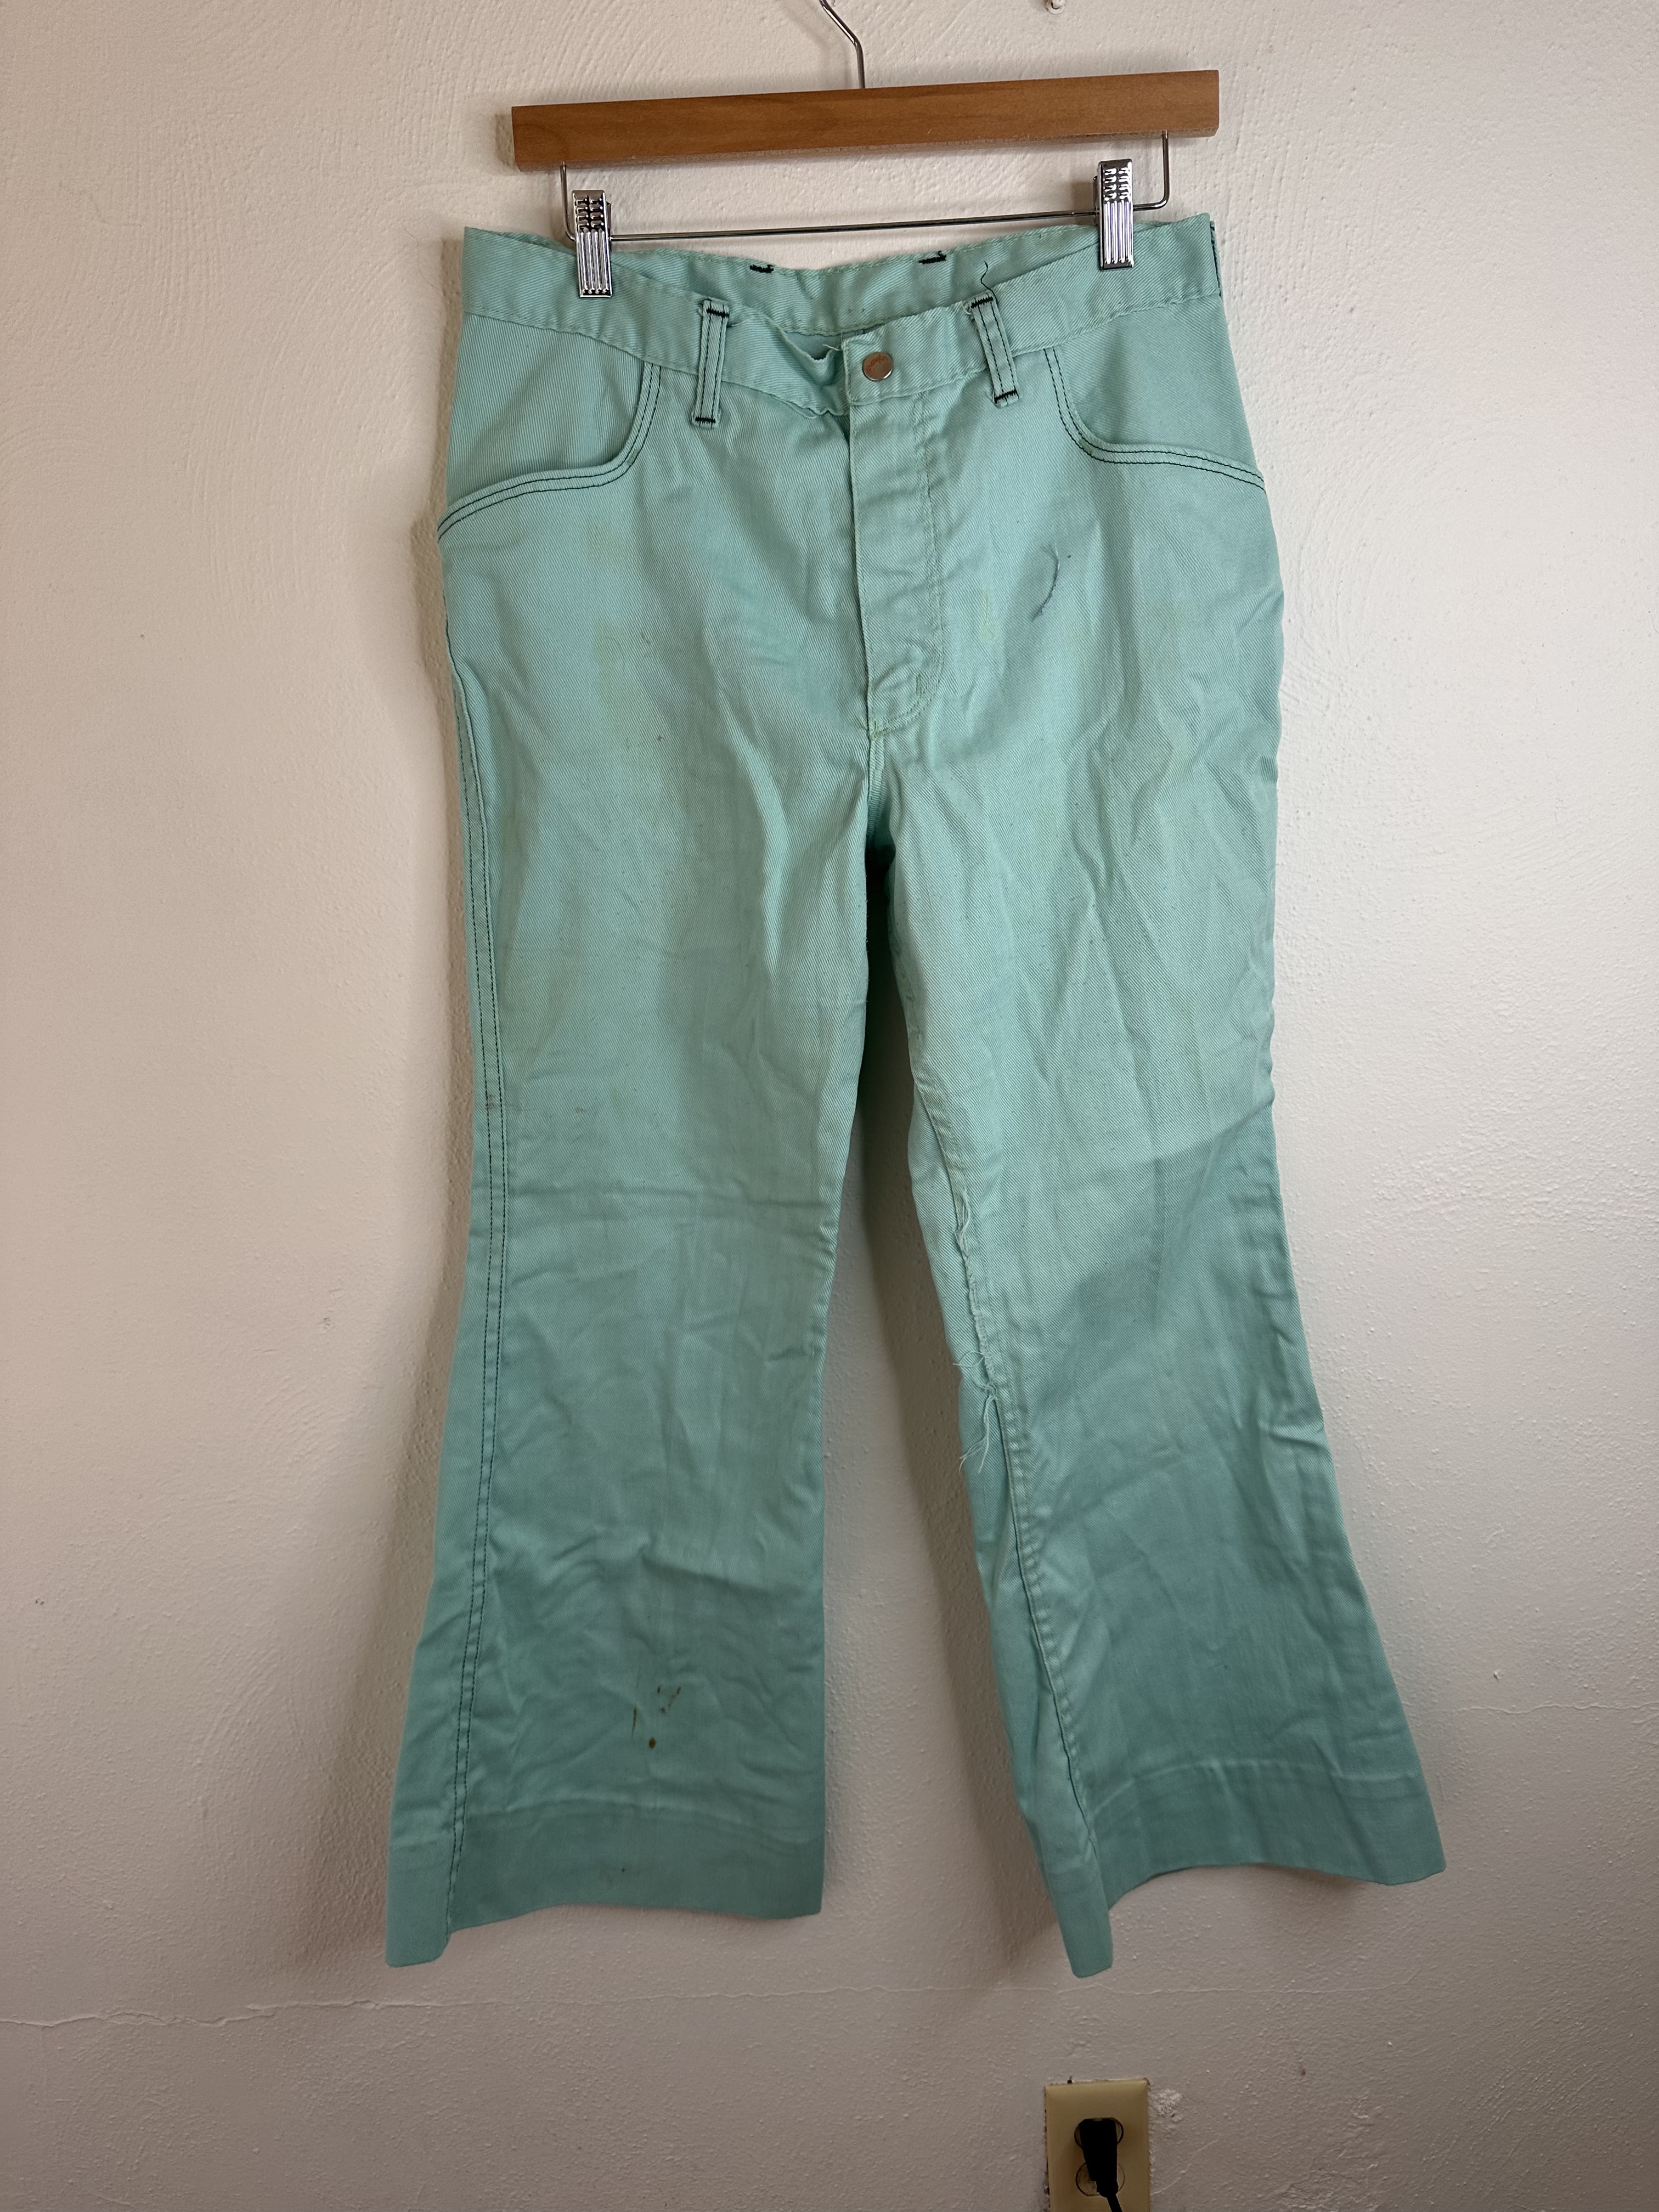 Vintage 70s Teal Sea Foam Green Wrangler Bell Bottoms Flare Denim jeans  Size 32X28. - Vagabonds Vintage